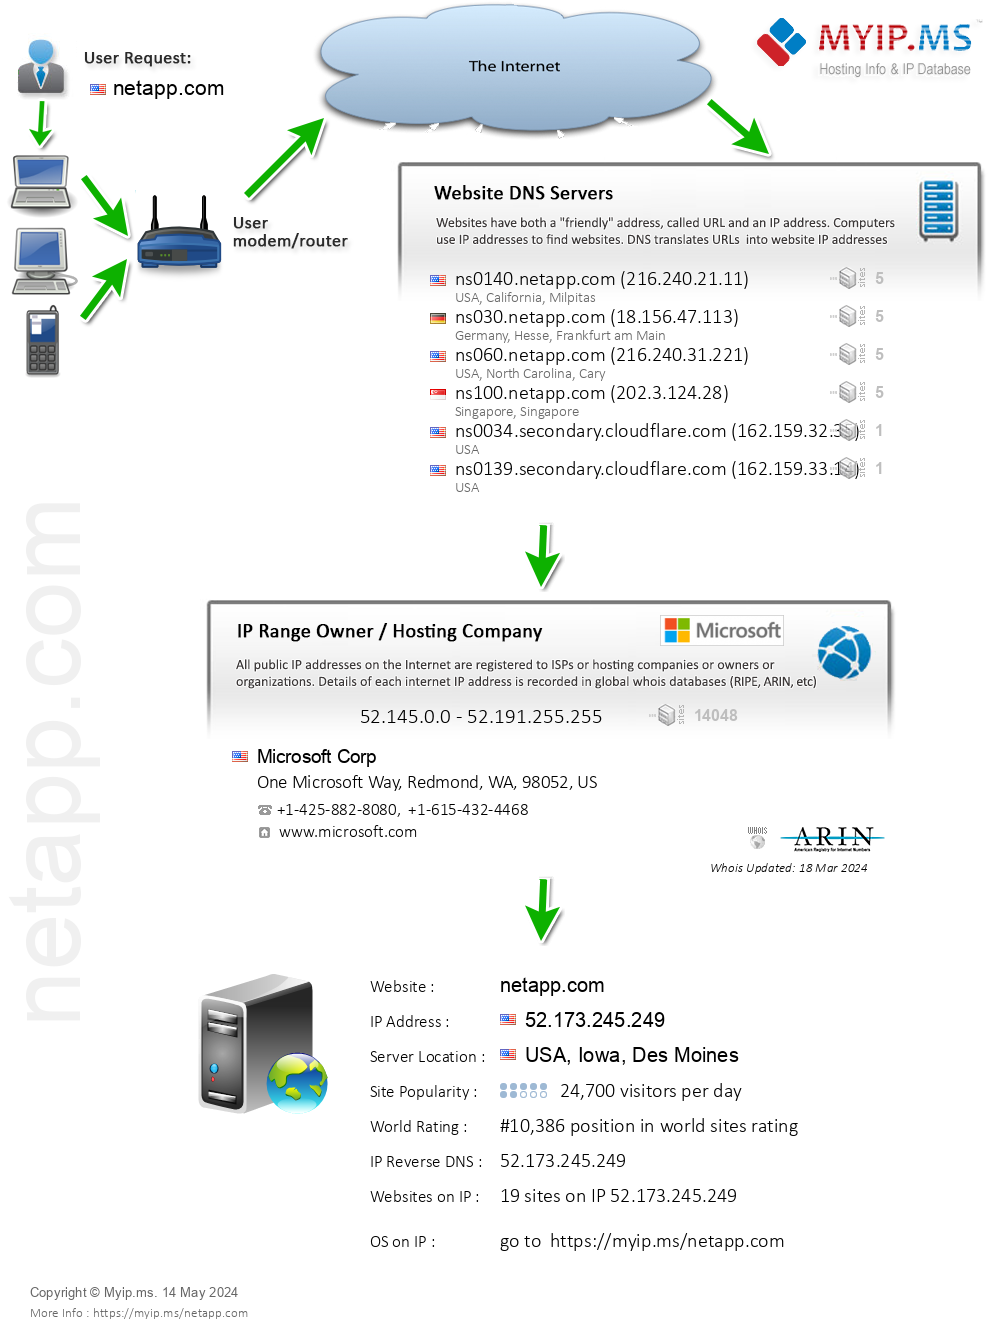 Netapp.com - Website Hosting Visual IP Diagram